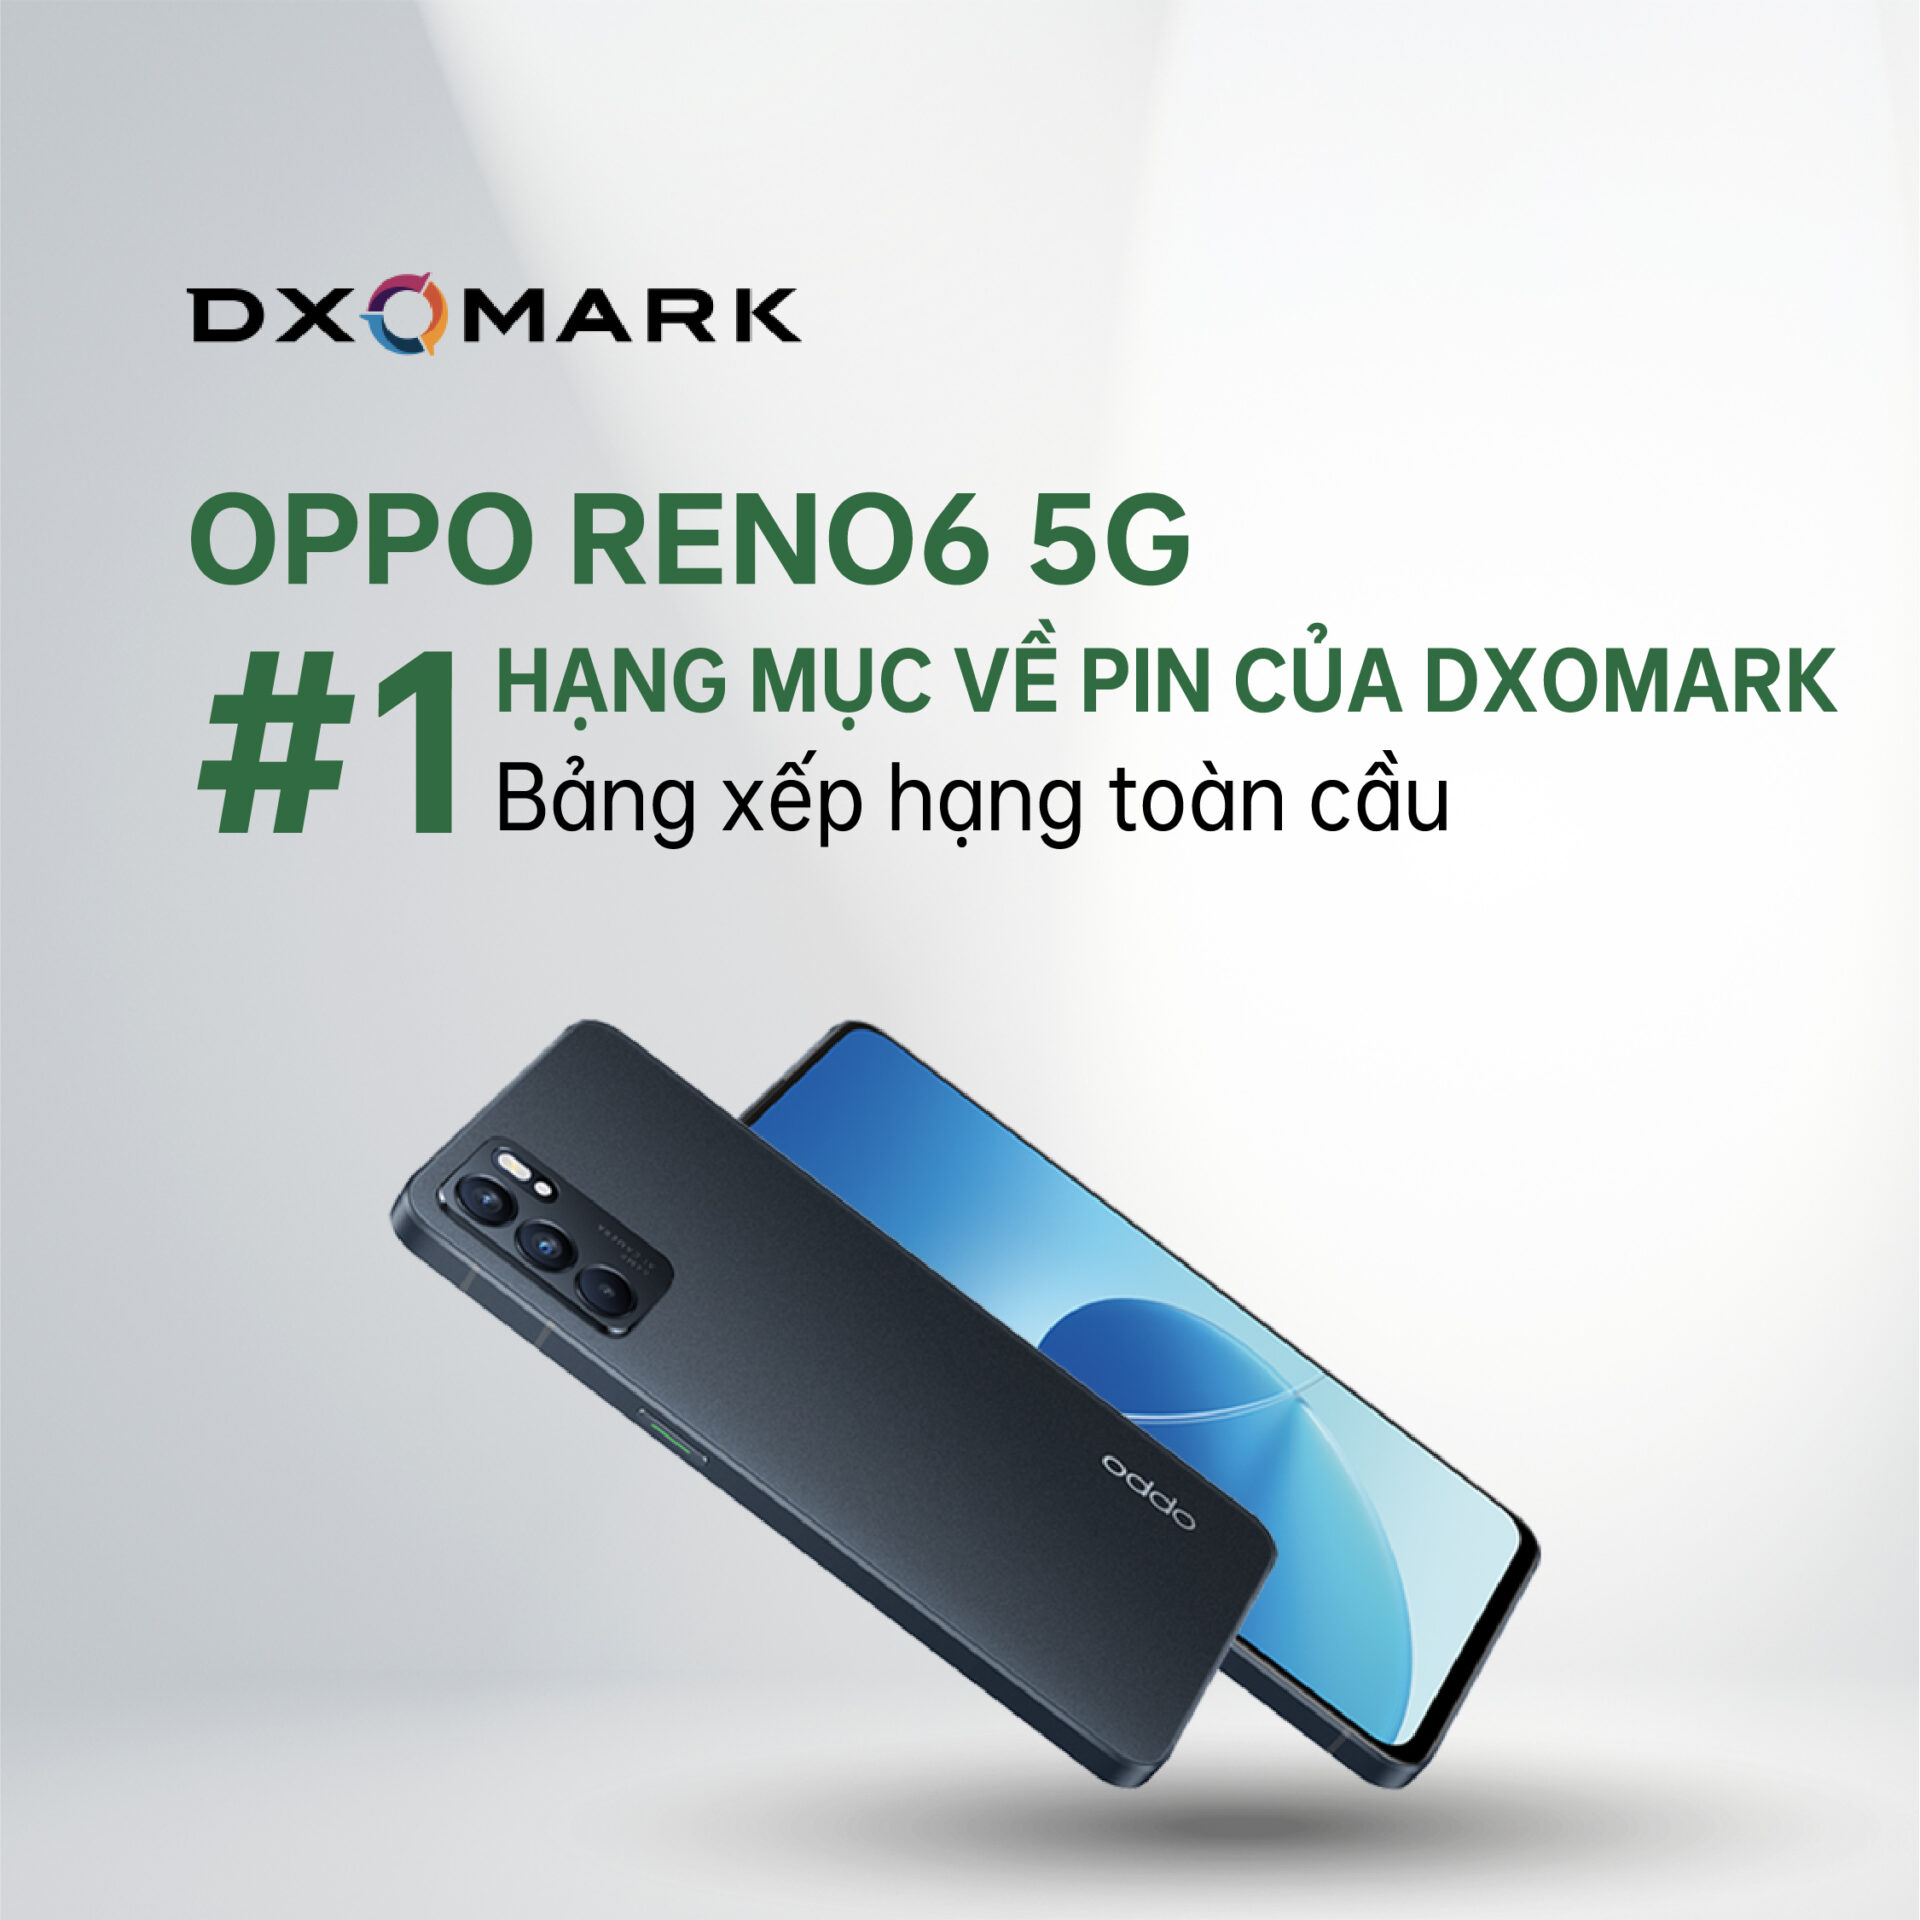 Bảng xếp hạng toàn cầu về pin của DXOMARK: OPPO Reno6 5G dẫn đầu